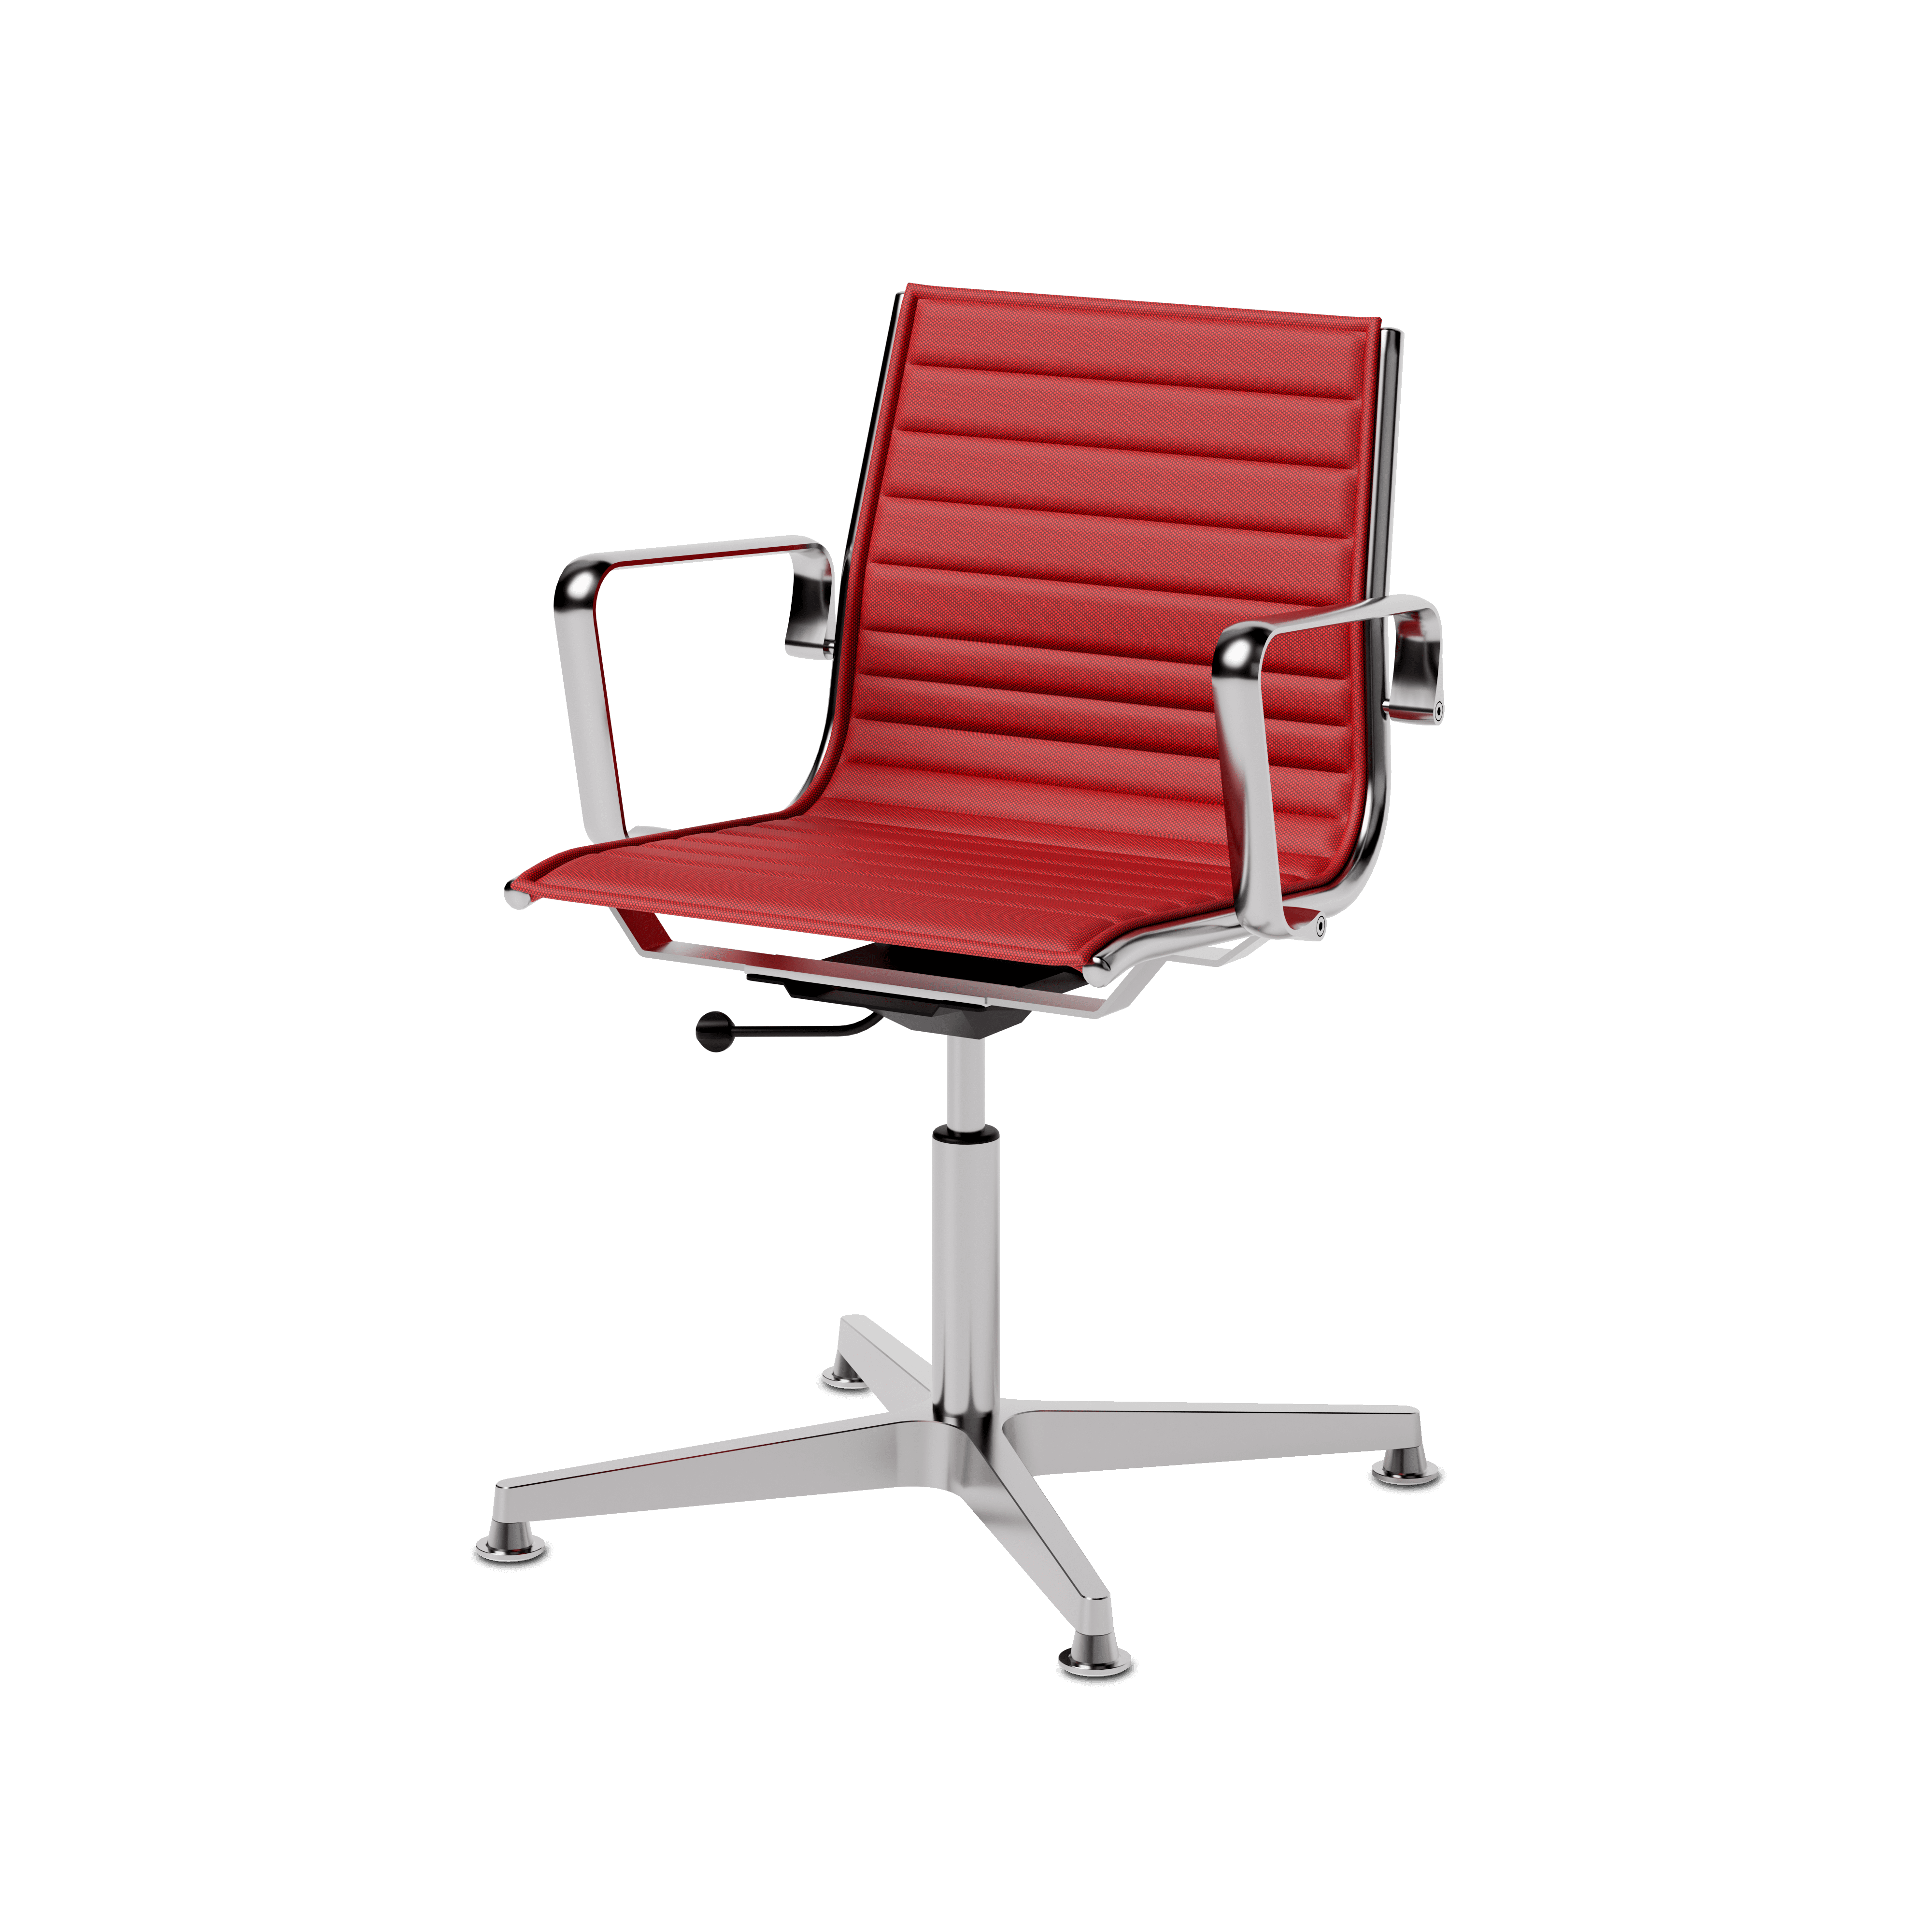 Fly Konferenzstuhl mit niedriger Rückenlehne mit Flachpolster